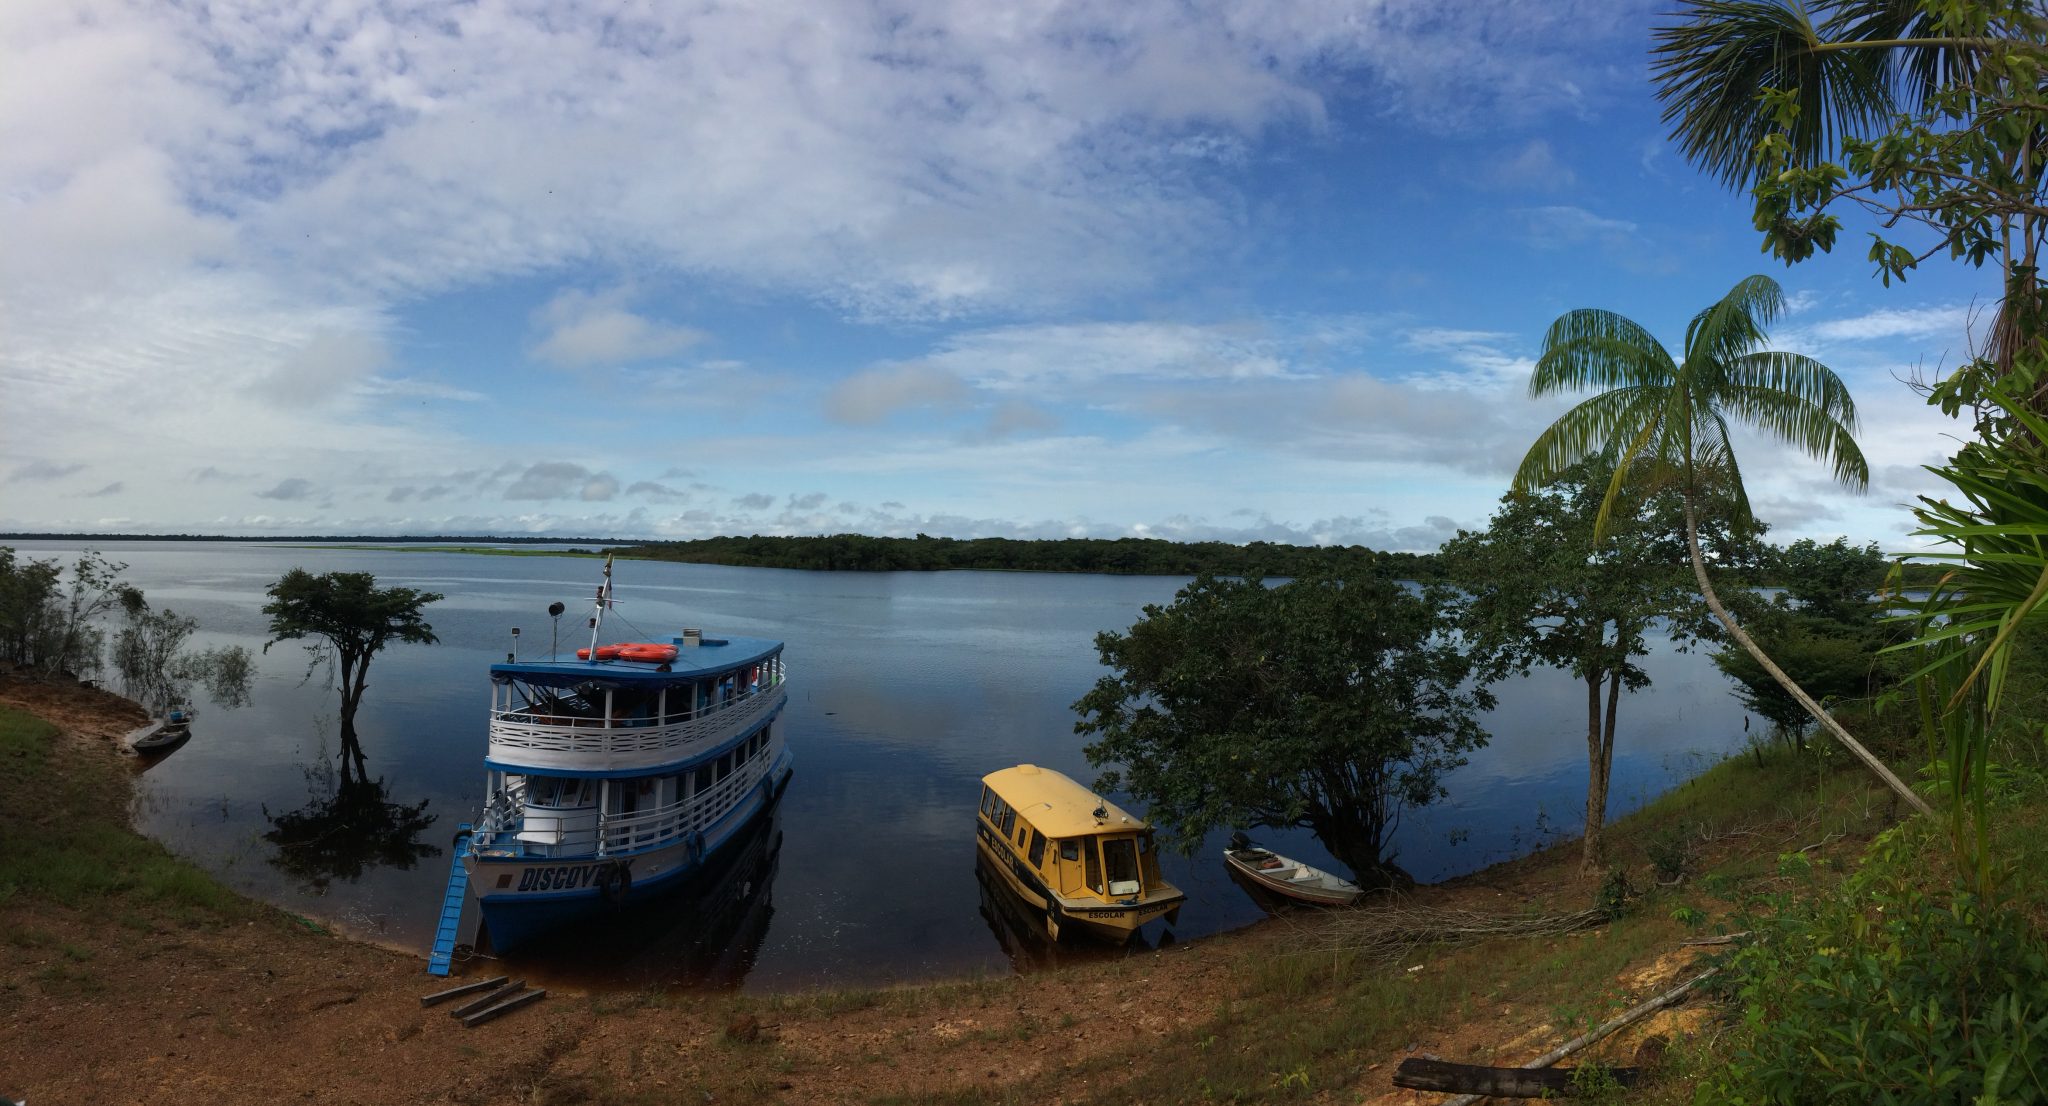 Volunturismo e Turismo de Base Comunitária na Amazônia: descobrindo a região de uma forma autêntica e fazendo o bem!